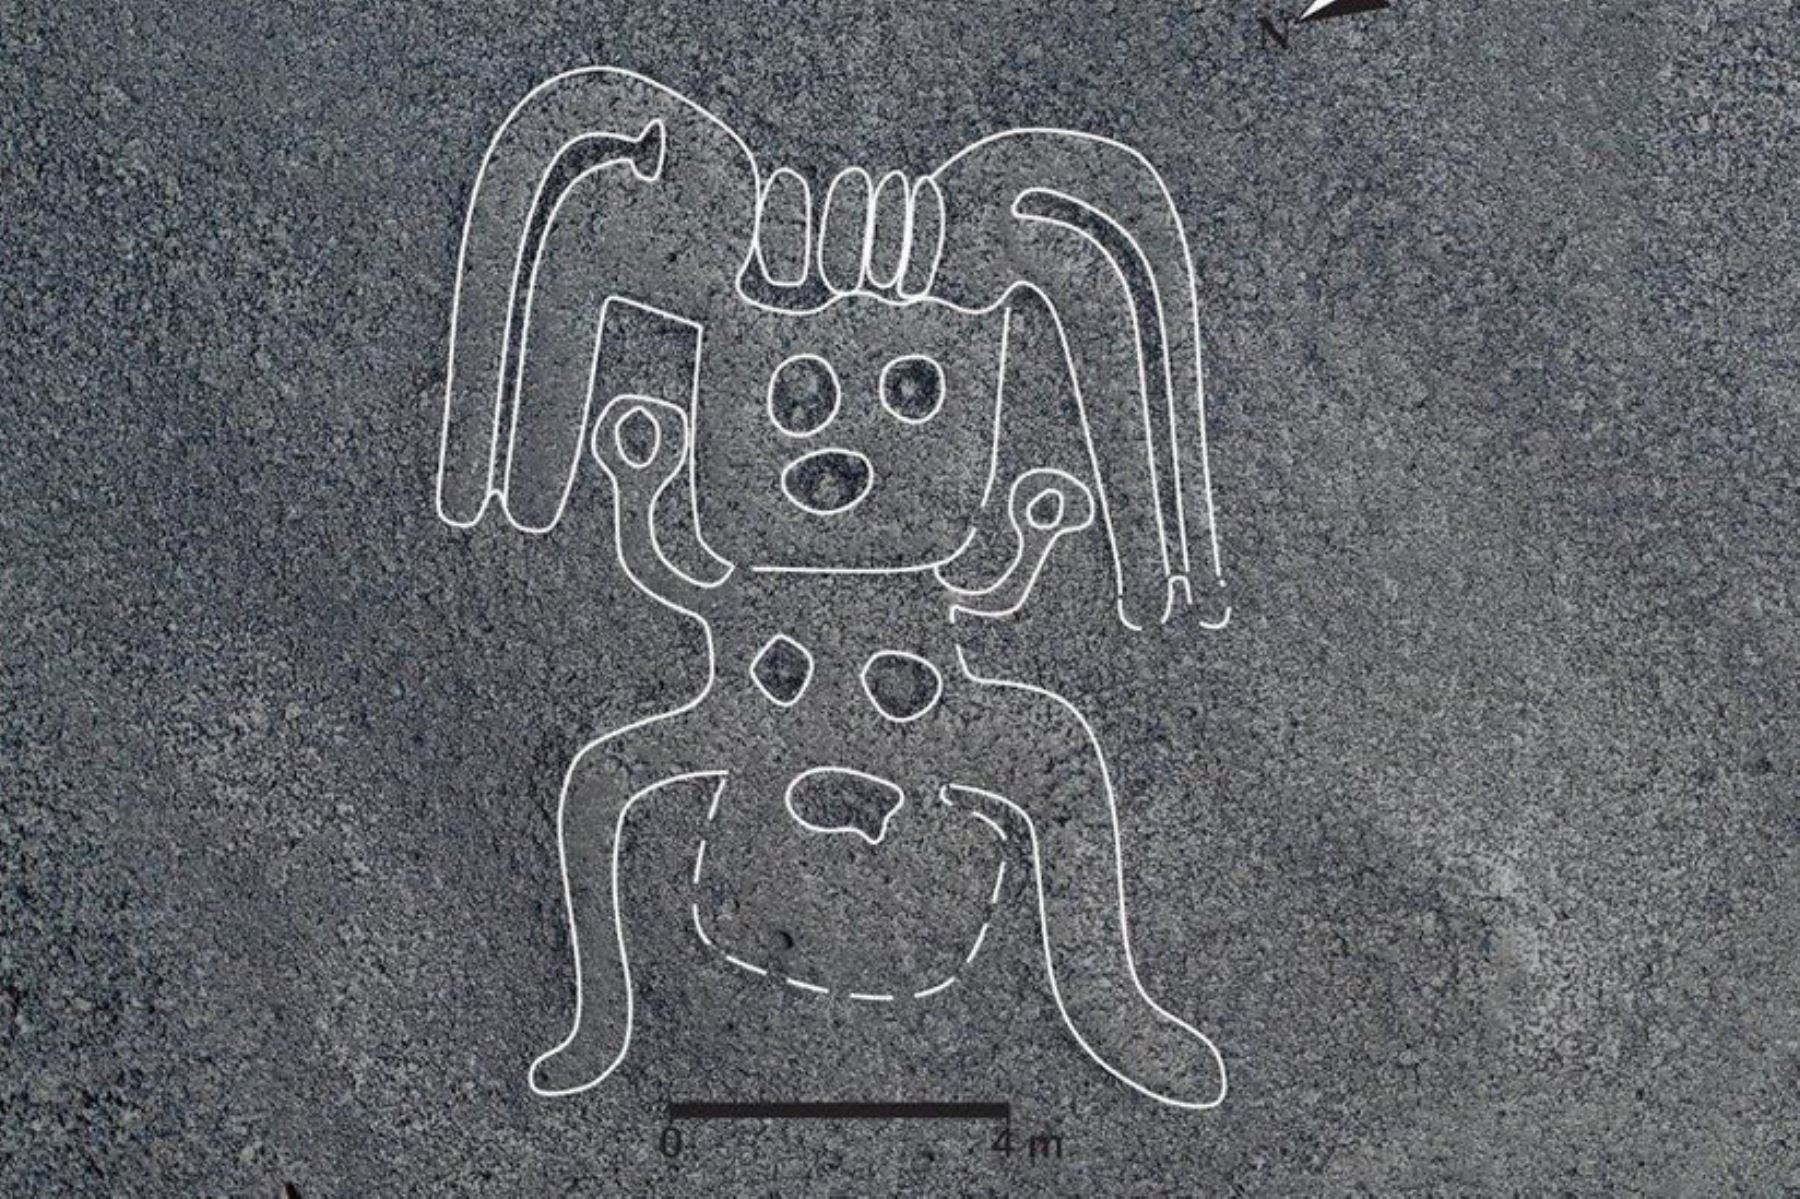 Figura de humanoide sorprende entre los 143 geoglifos descubiertos en Nasca, afirma BBC Mundo. Foto: Universidad de Yamagata